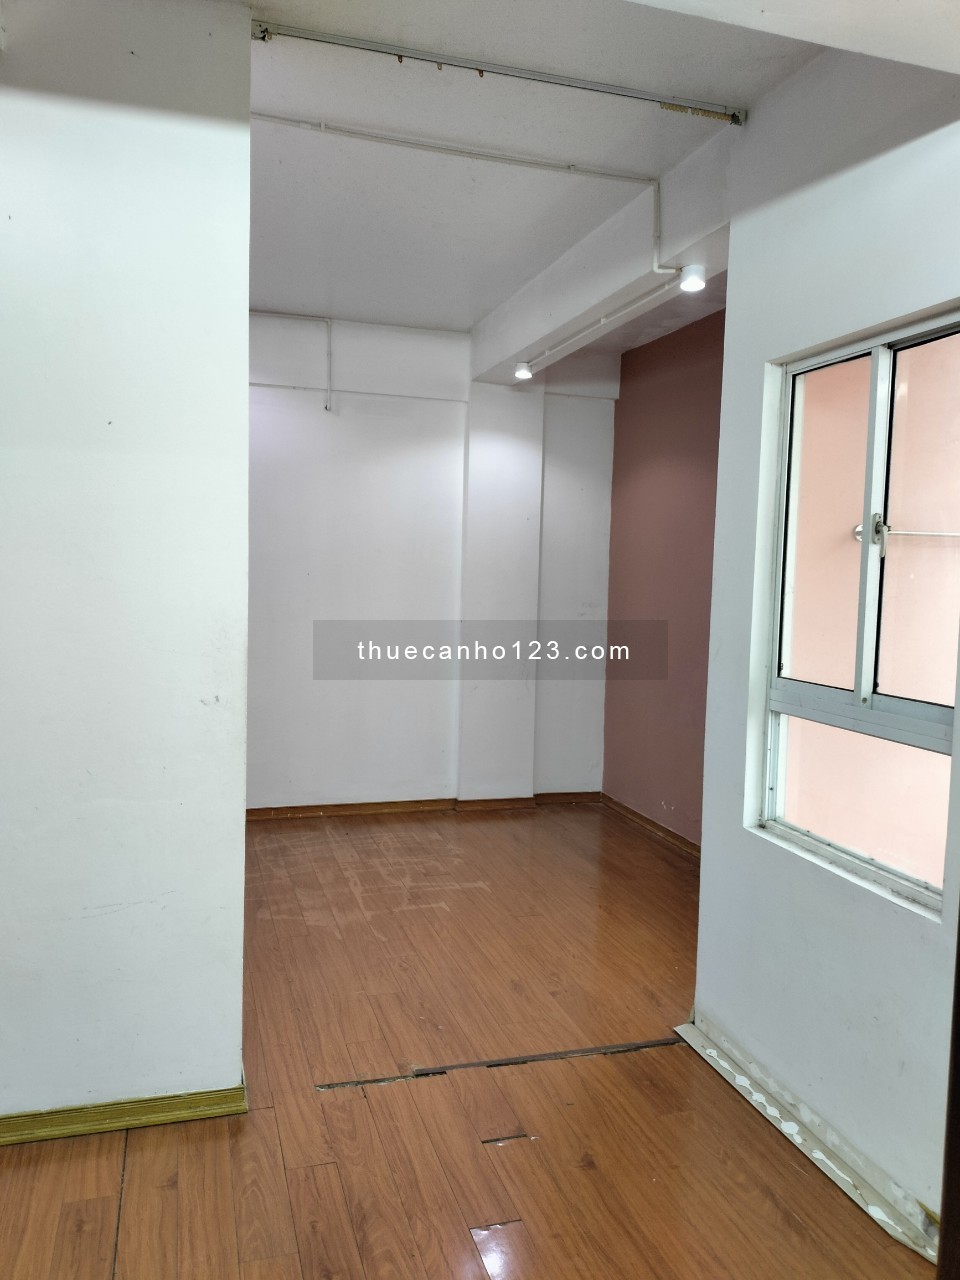 Chính chủ cho thuê căn hộ chung cư Tân Phúc - Nghệ An, 60m2, 2PN, 1WC, giá chỉ 4.5 triệu/tháng